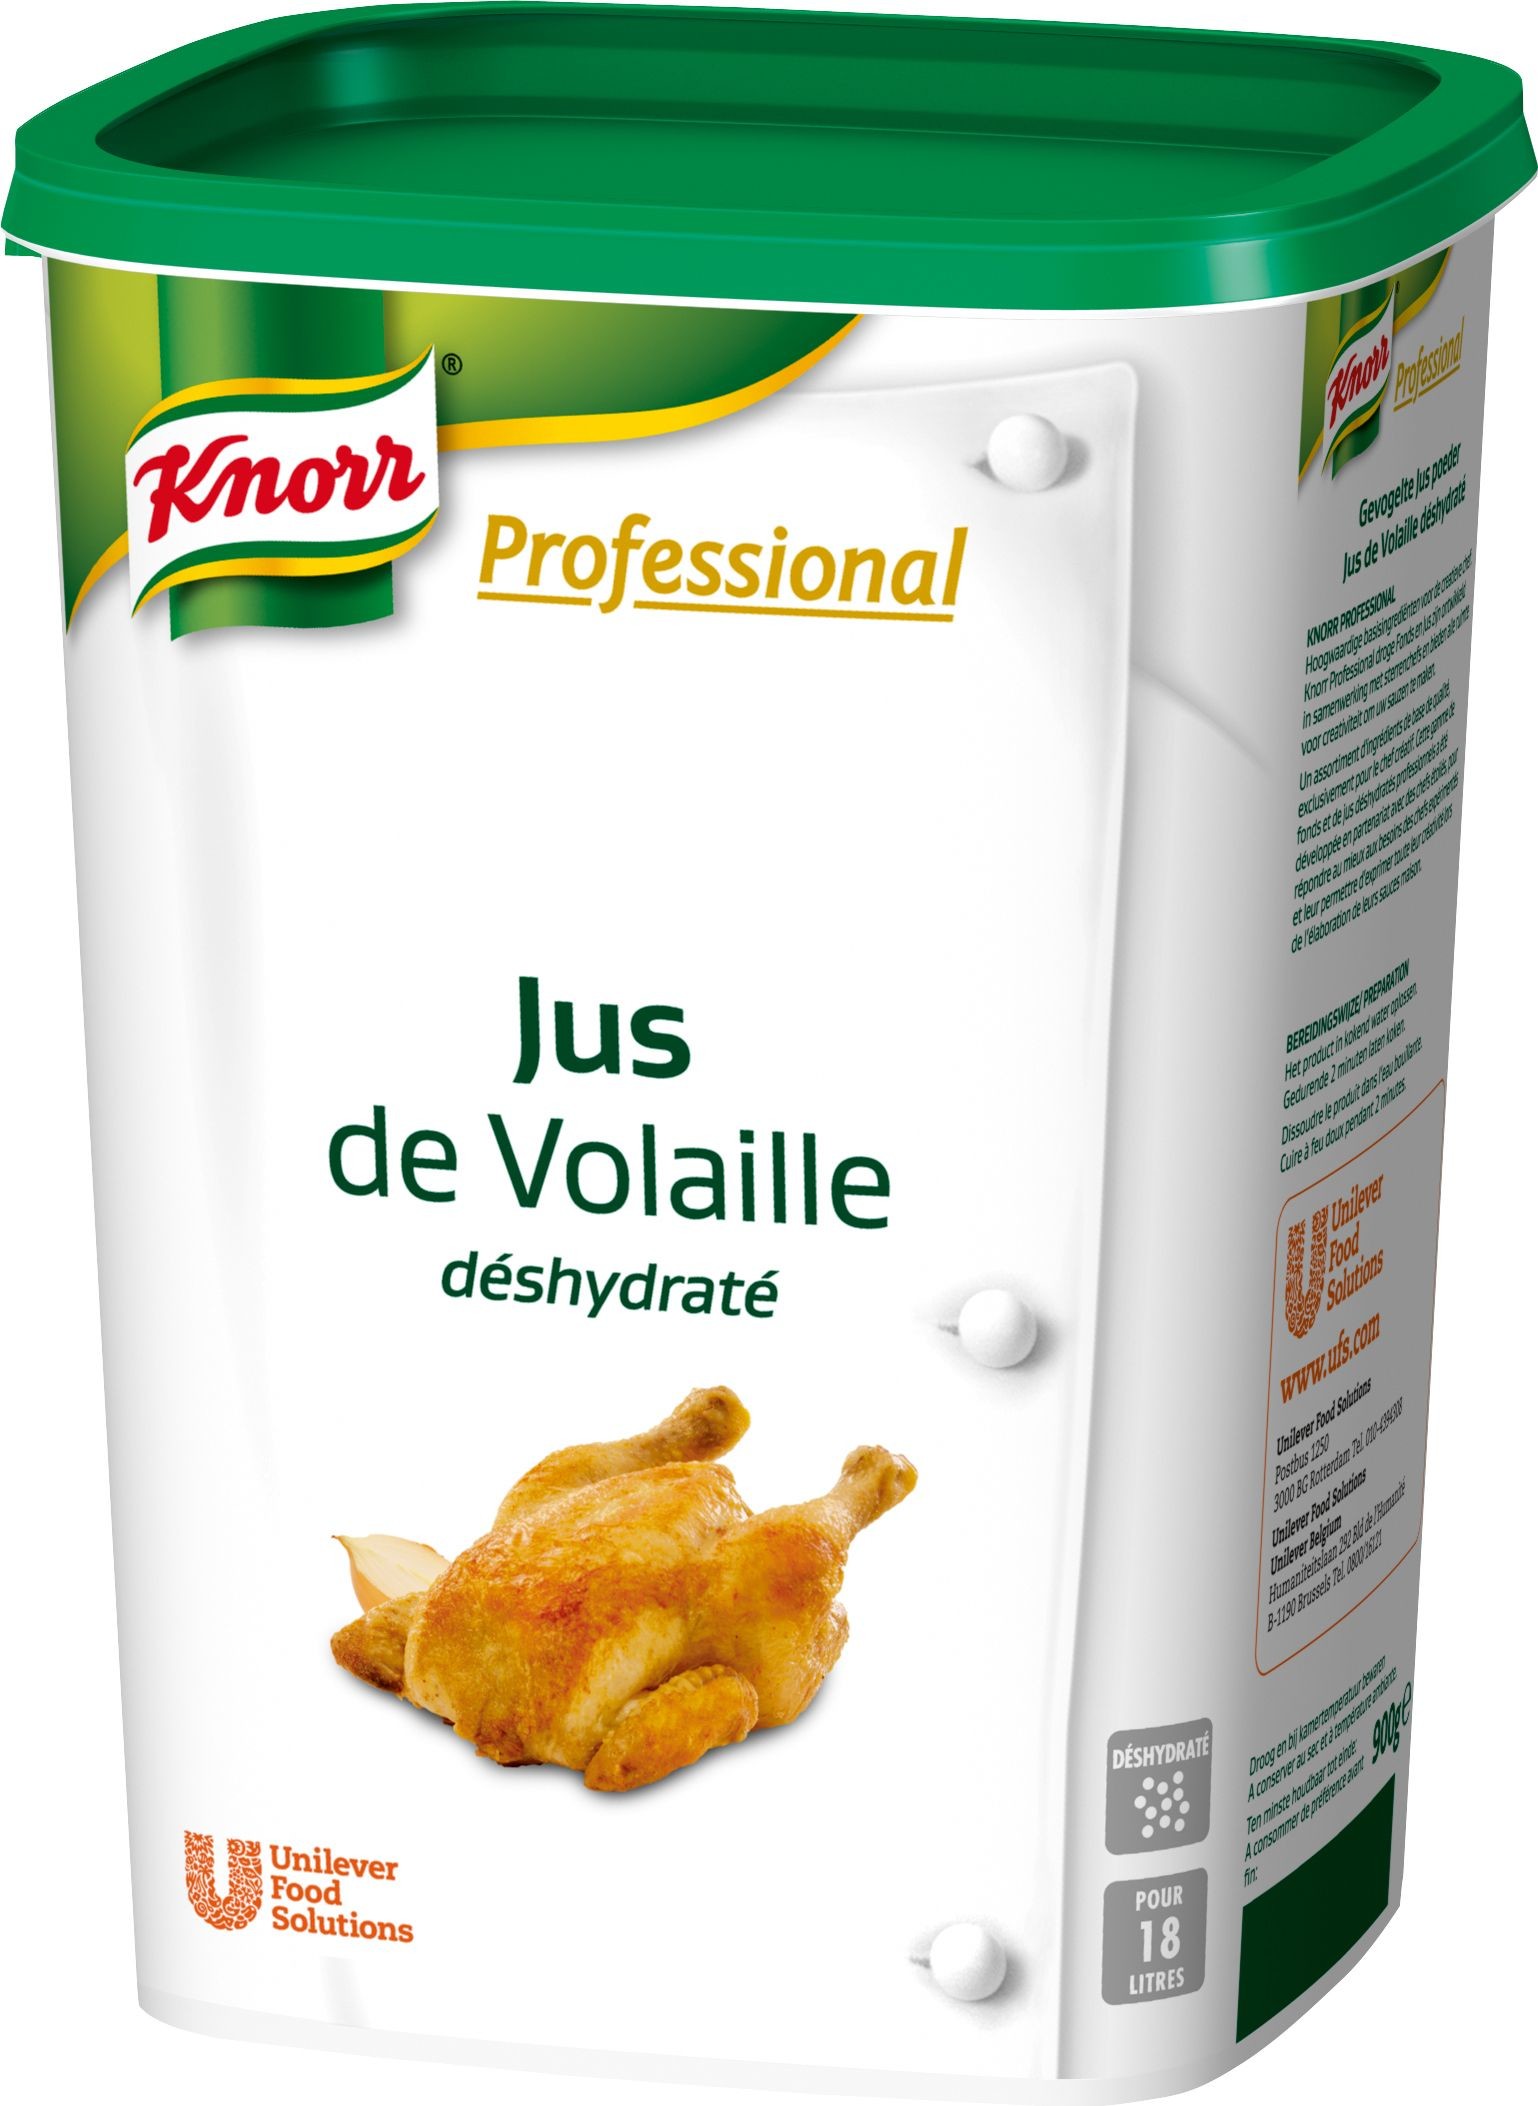 Knorr Carte Blanche fond de vollaille claire poudre 1kg Professional